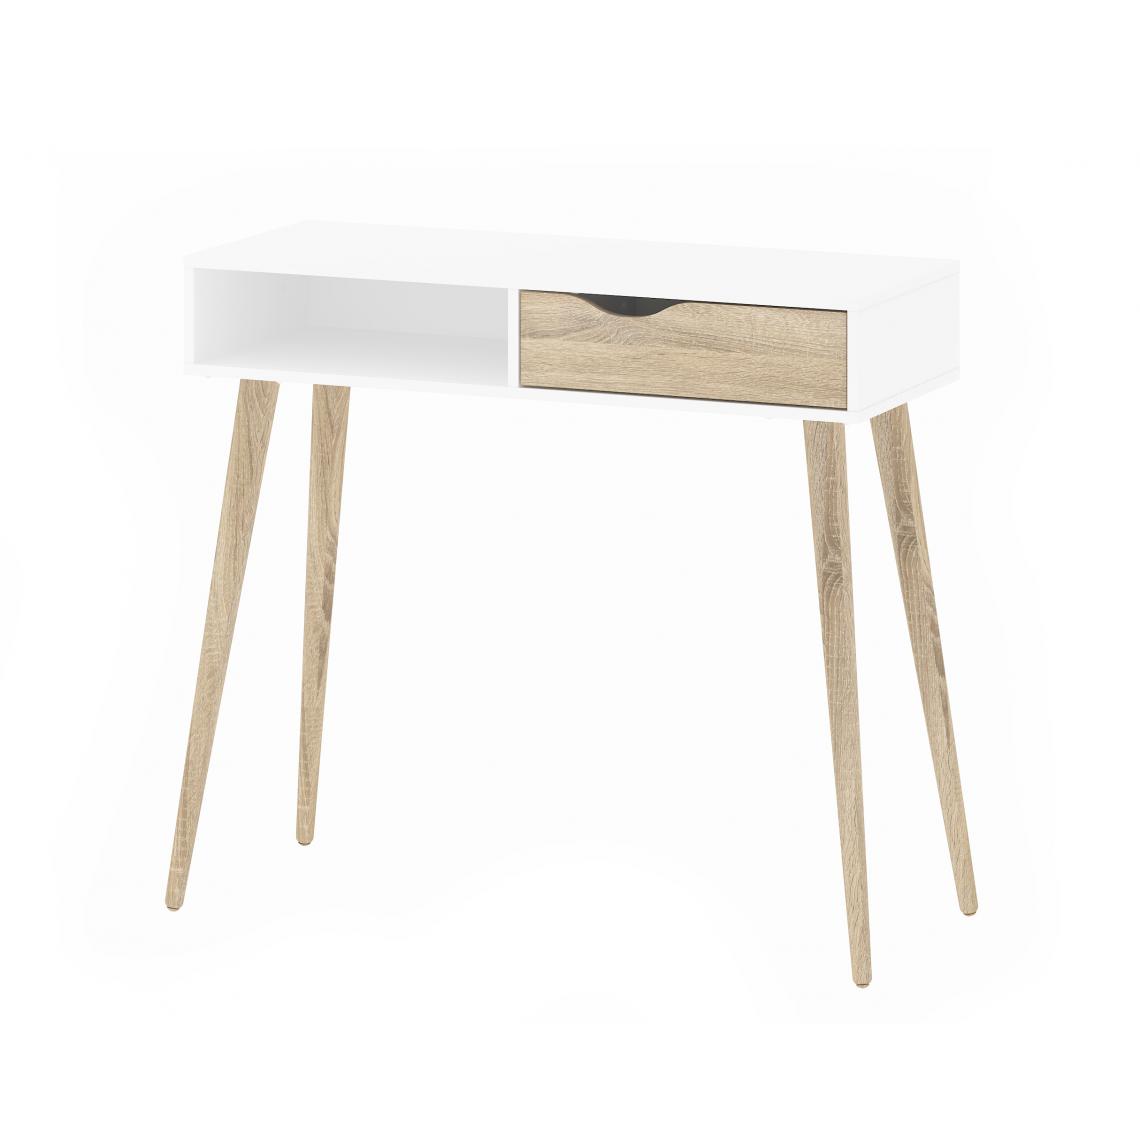 Alter - Table console avec un tiroir et un compartiment ouvert, coloris blanc et chêne, 103 x 89 x 43 cm - Tables à manger